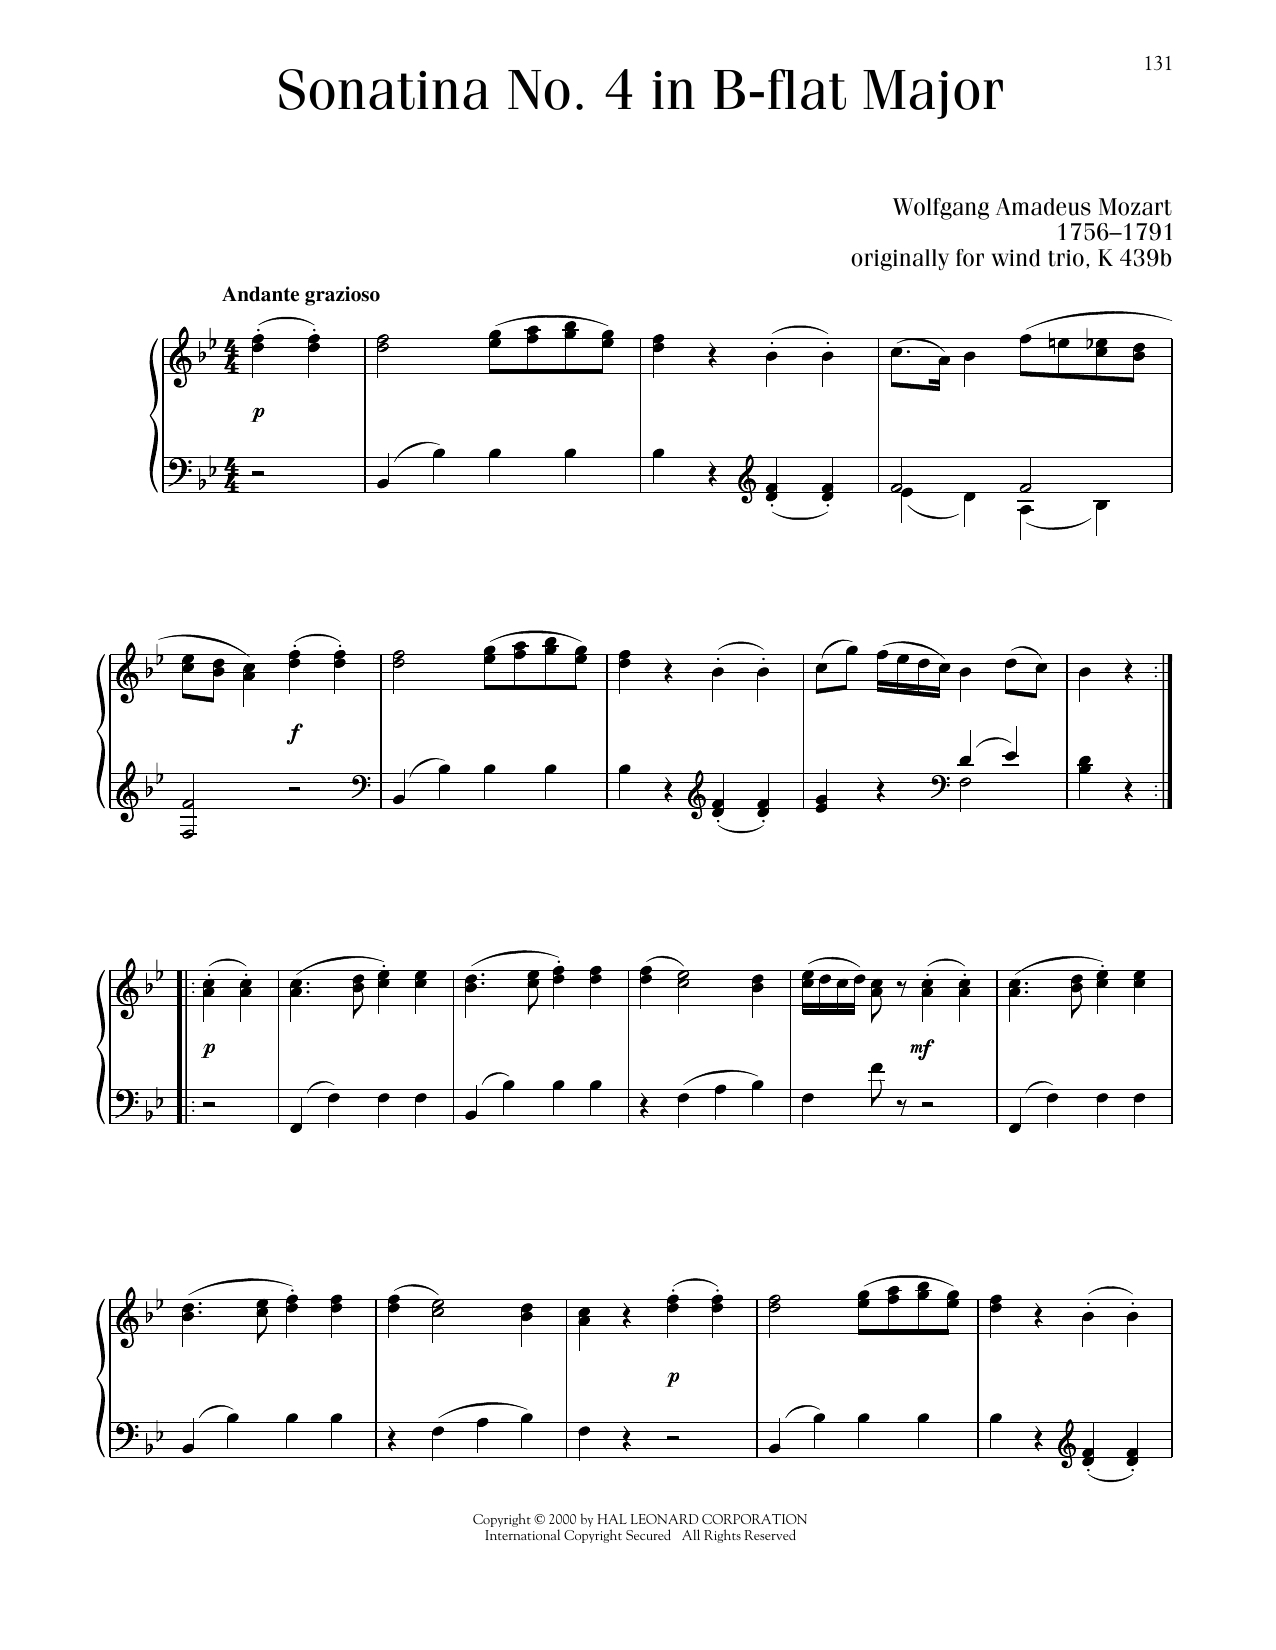 Wolfgang Amadeus Mozart Sonatina No. 4 In B-Flat Major sheet music notes printable PDF score